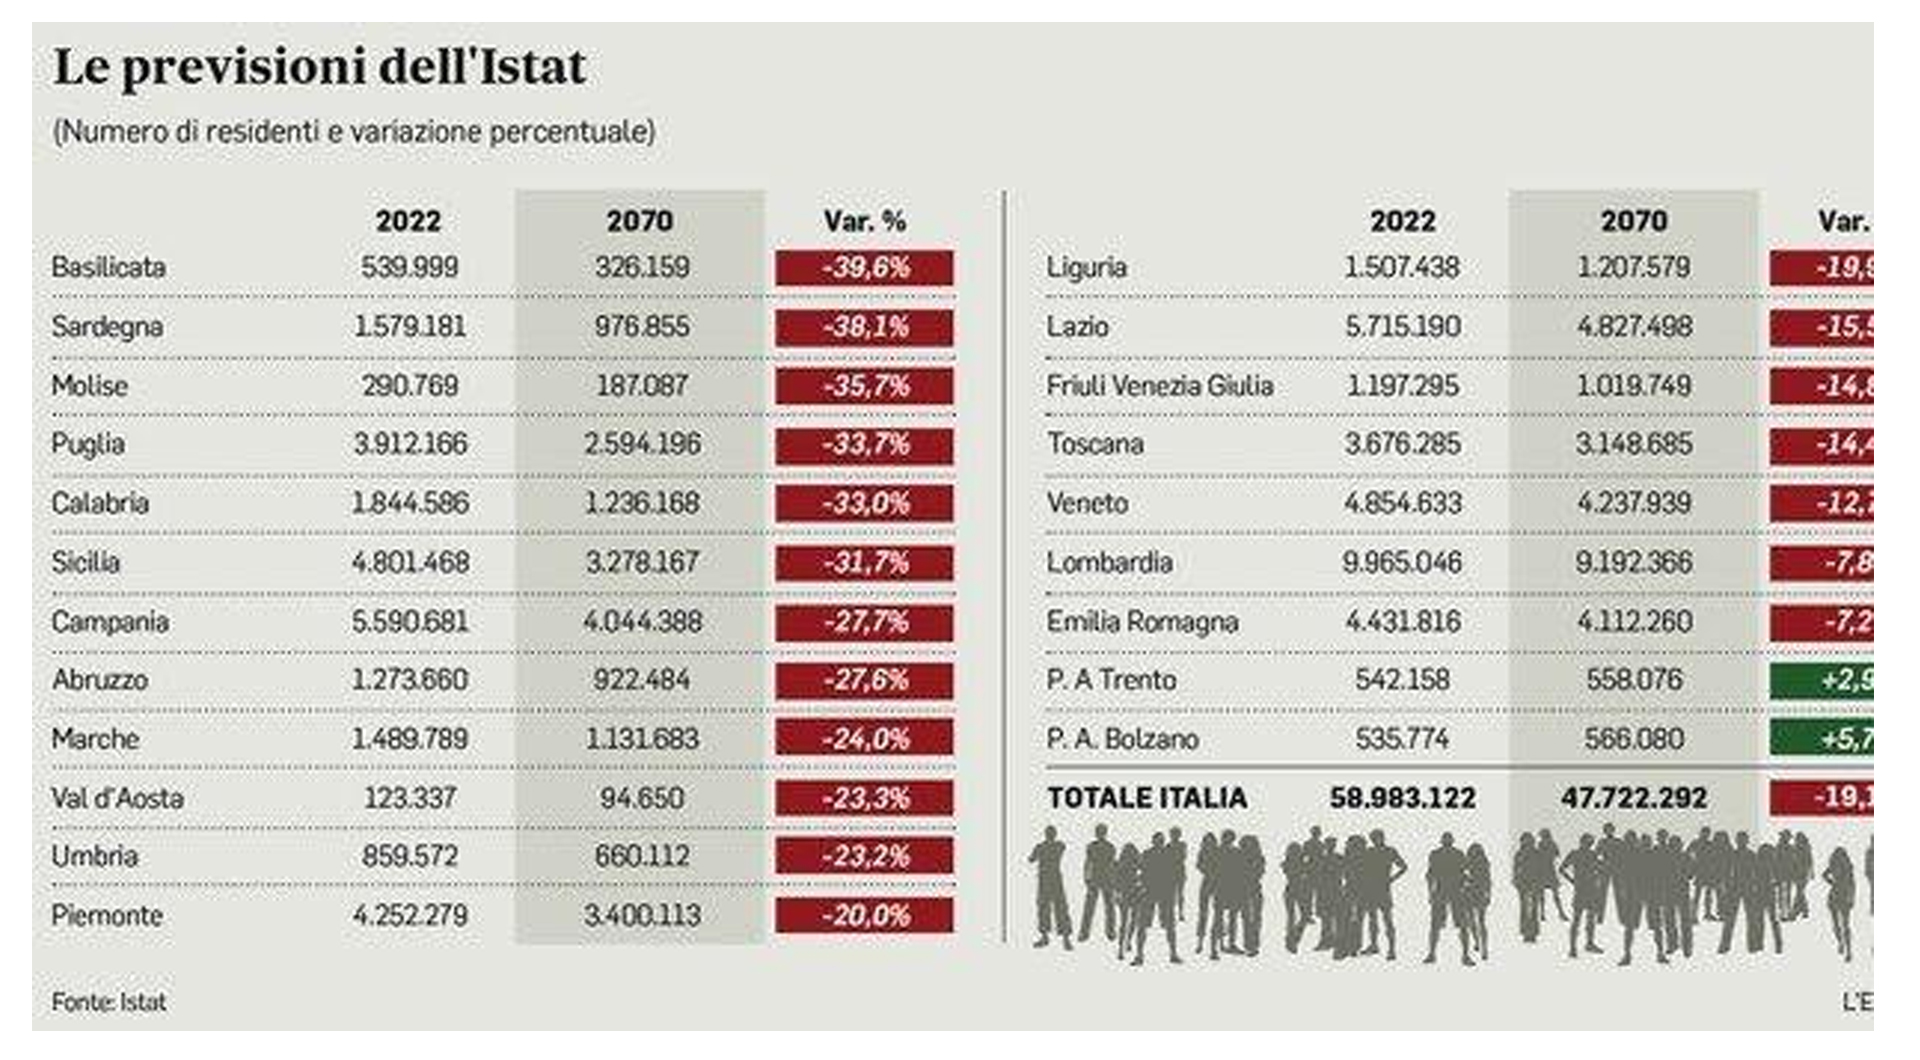 L’Istat prevede che nel 2070 saremo 11 milioni in meno. La Sardegna e la Basilicata perderanno quasi il 40% della popolazione